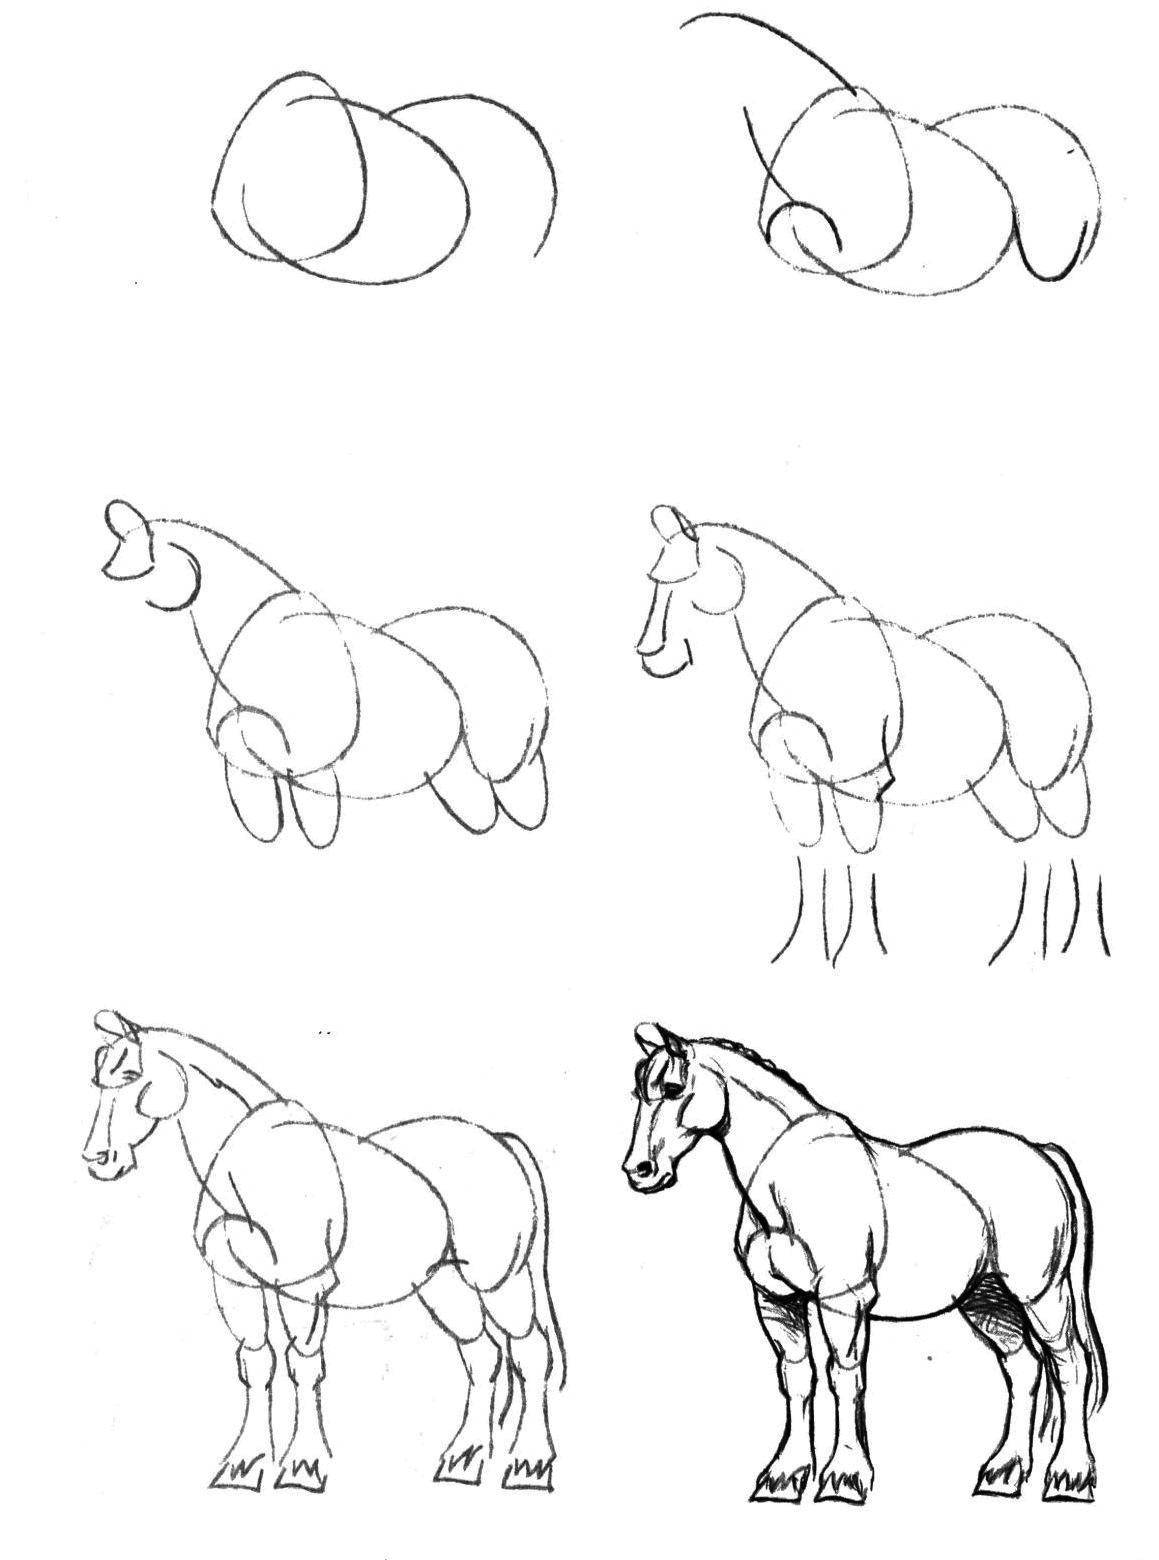 Картинки поэтапно. Рисунок карандашом пошагово. Пошаговое рисование коня. Рисование лошади пошагово. Поэтапные рисунки животных карандашом.